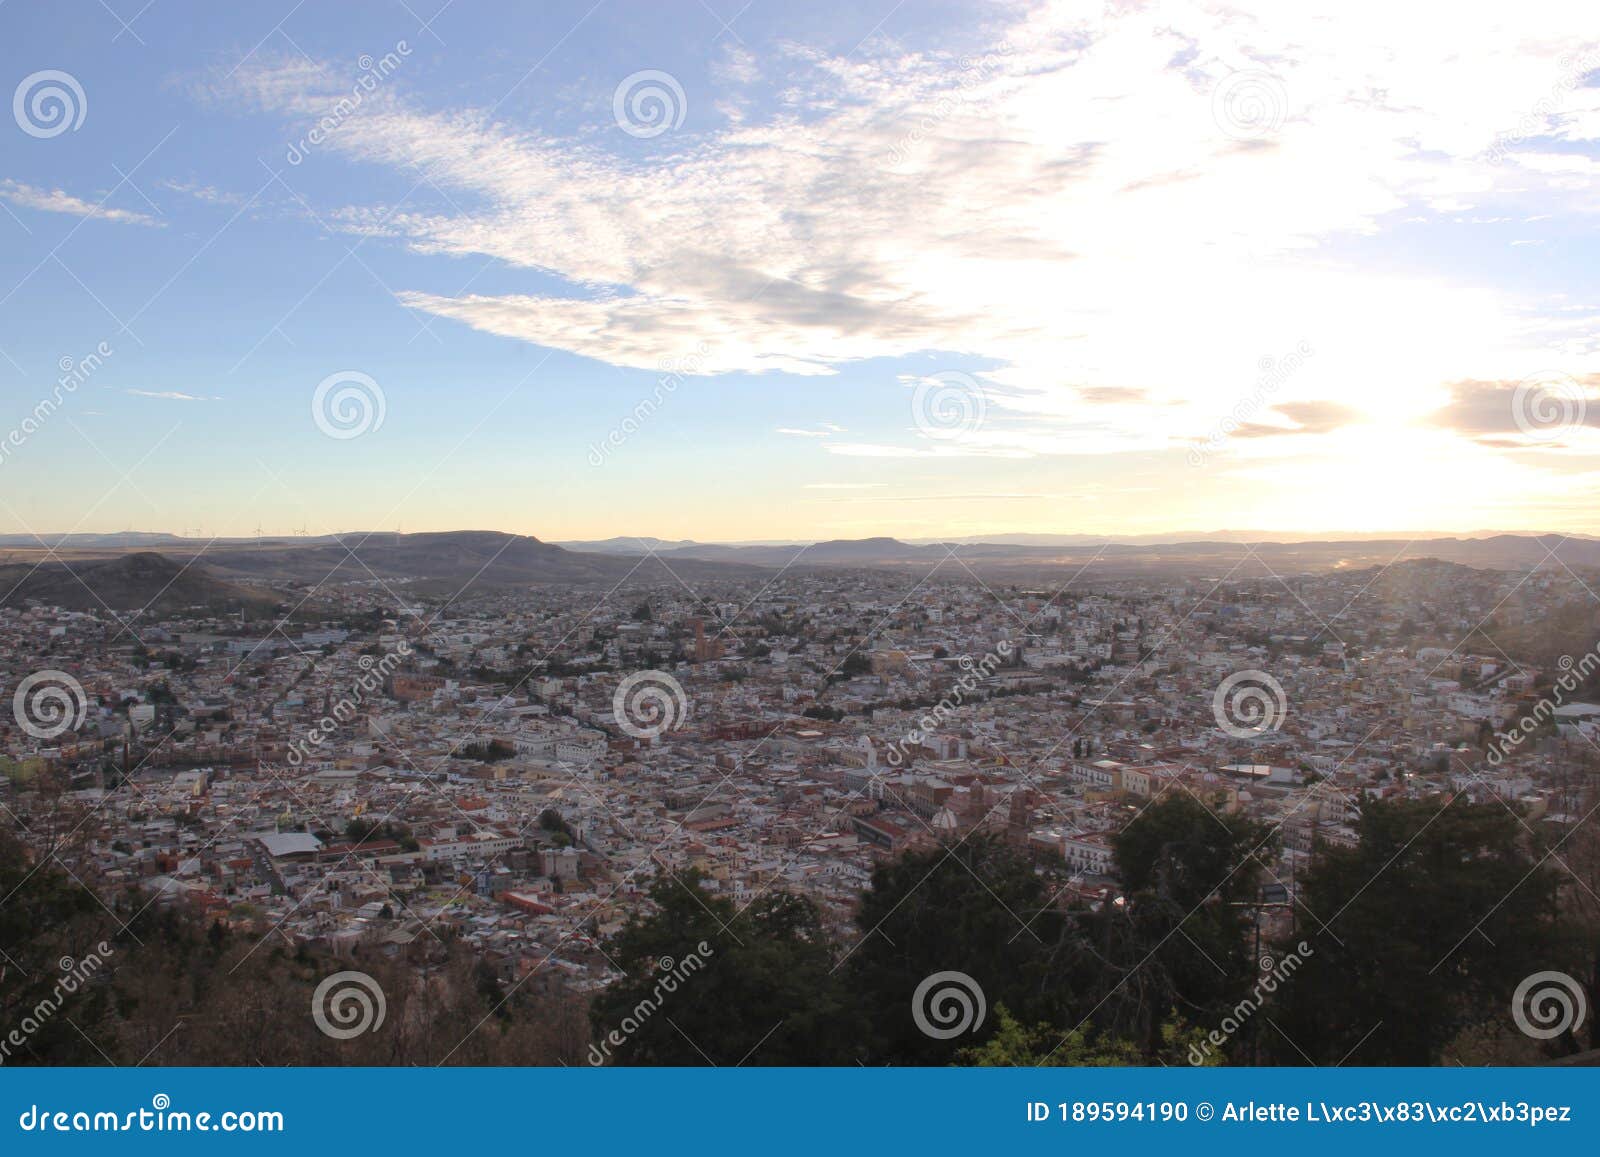 view from the viewpoint of cerro de la bufa in zacatecas mexico